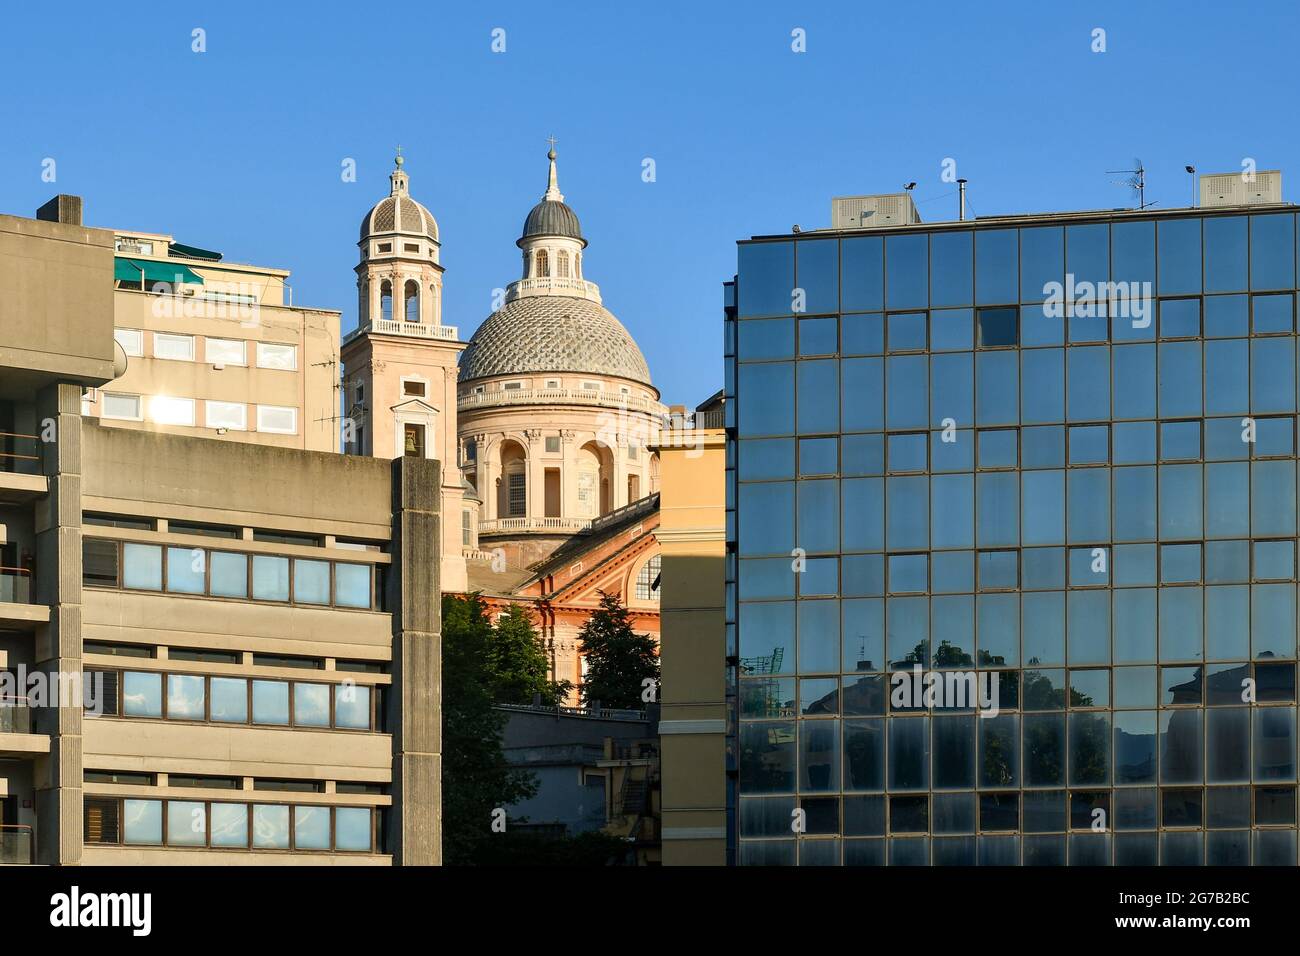 Kontrast zwischen der Renaissance-Kirche Santa Maria Assunta (1552) und den modernen Palästen (1969-1973) im Stadtteil Carignano, Genua, Italien Stockfoto